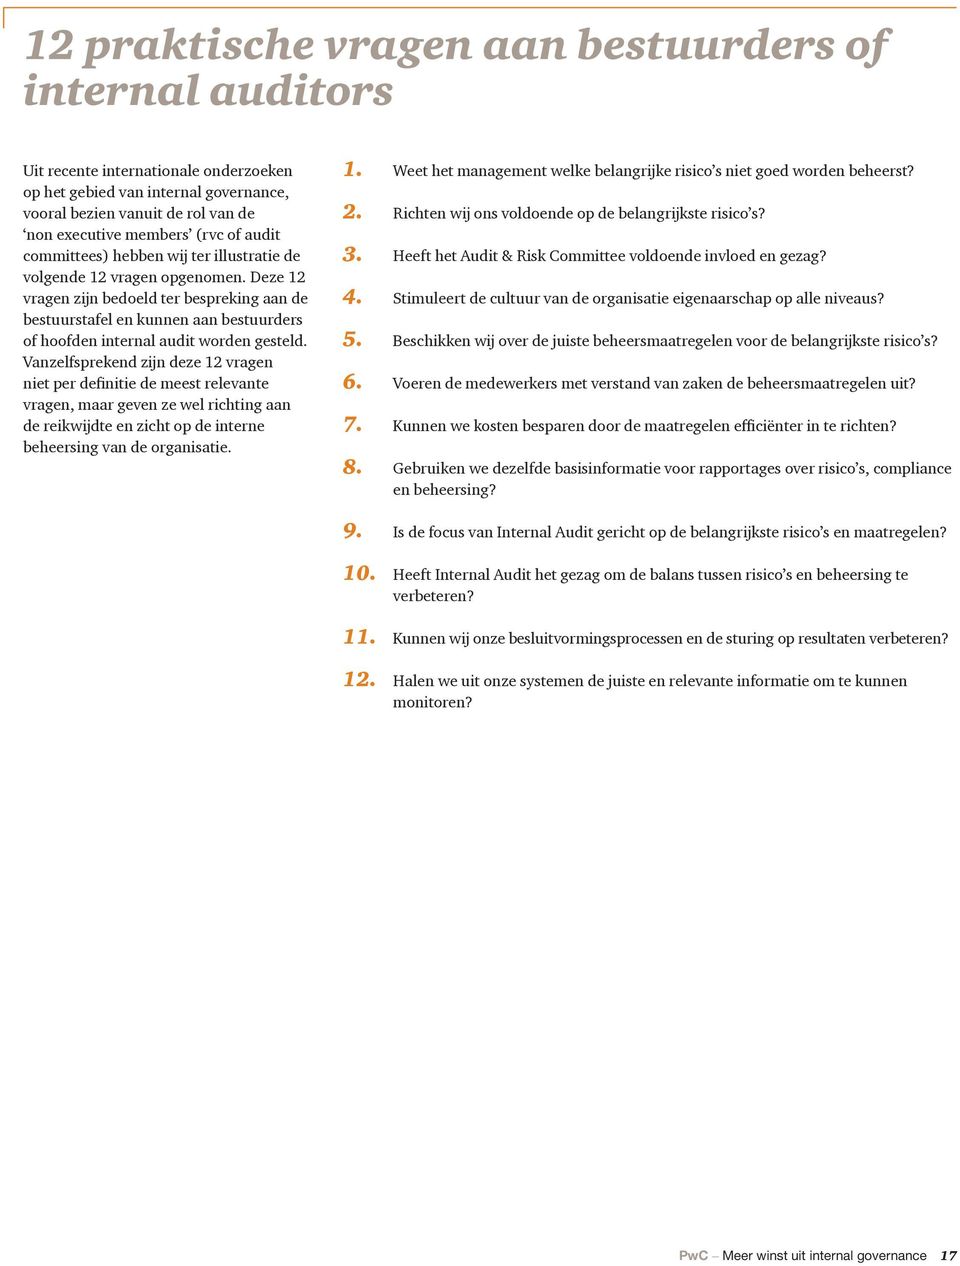 Deze 12 vragen zĳn bedoeld ter bespreking aan de bestuurstafel en kunnen aan bestuurders of hoofden internal audit worden gesteld.